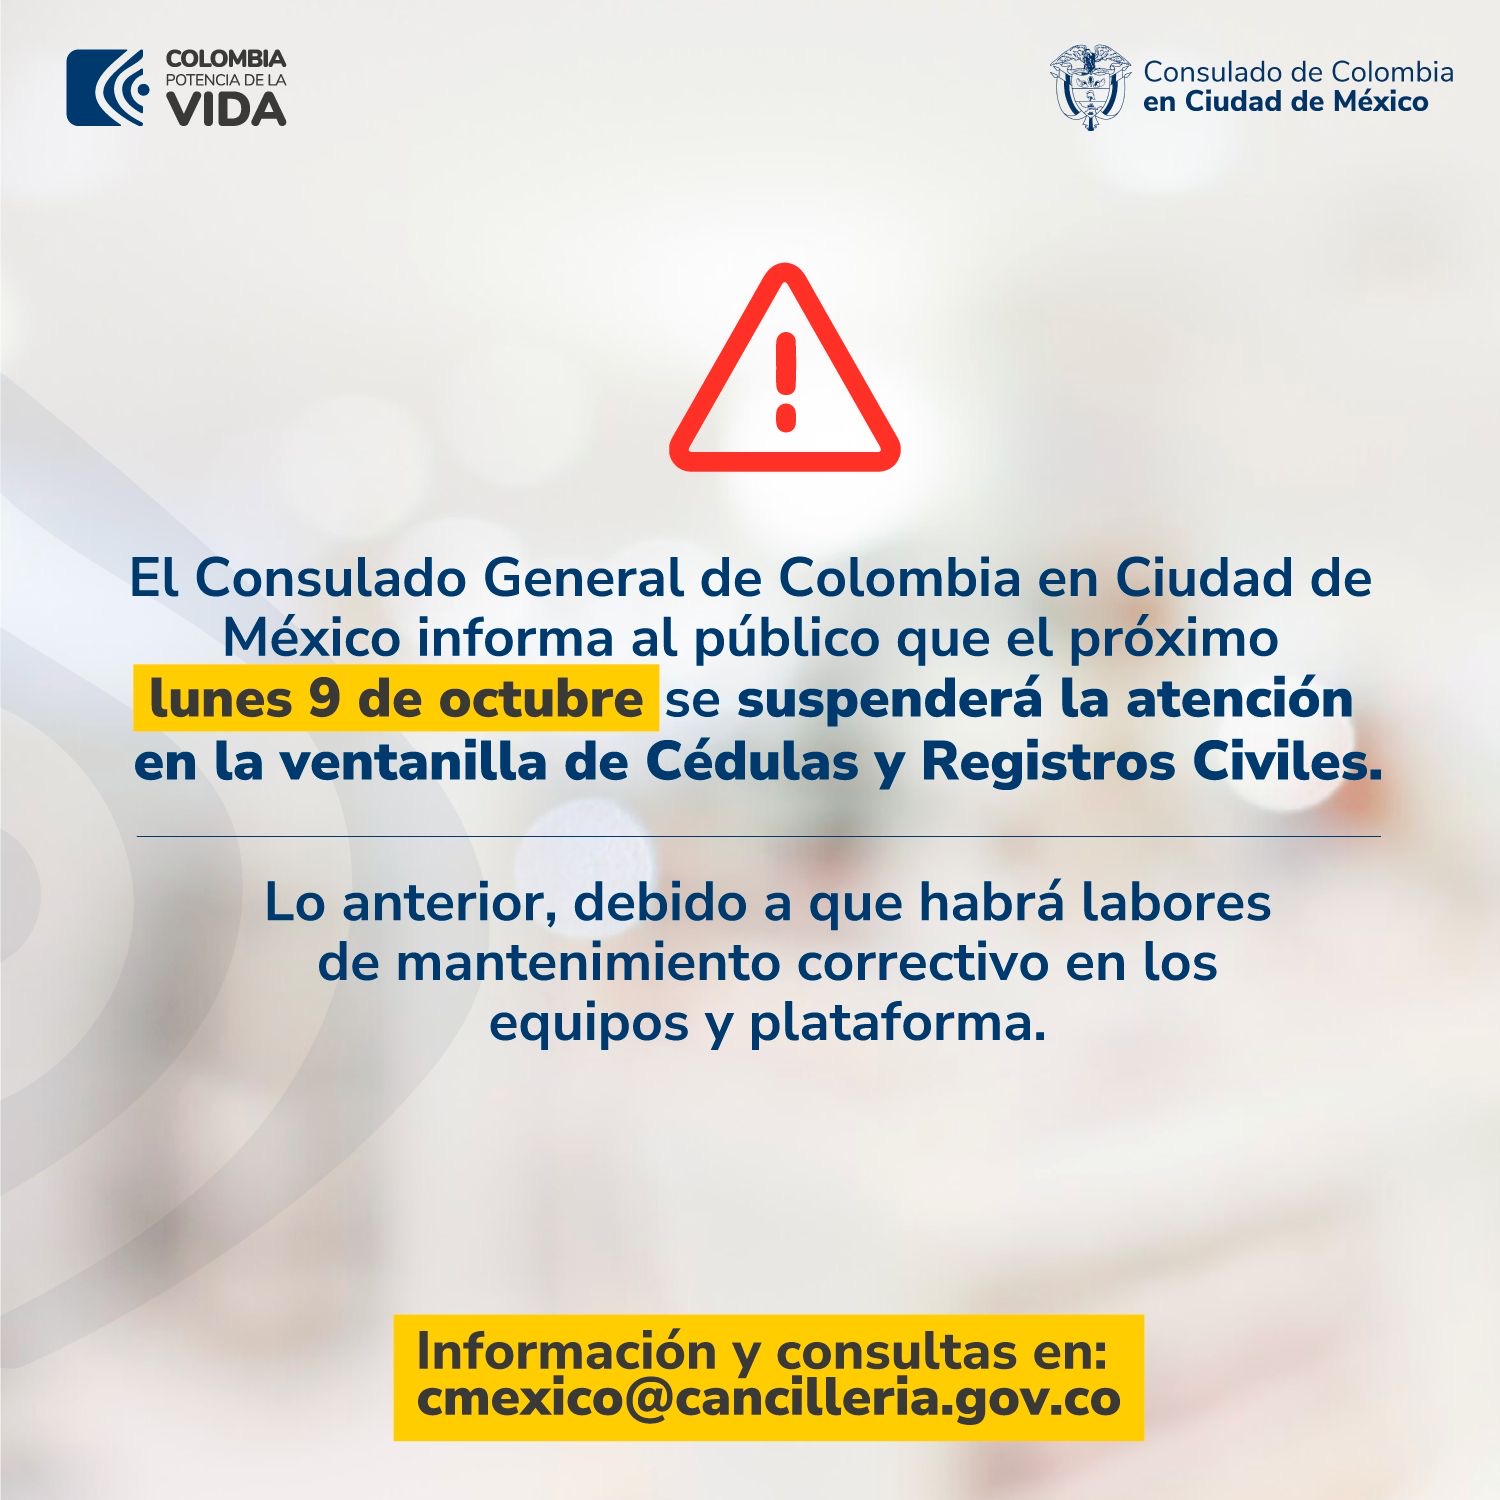 El Consulado informa que este lunes 9 no habrá atención en trámites de Cedulas y Registros Civiles